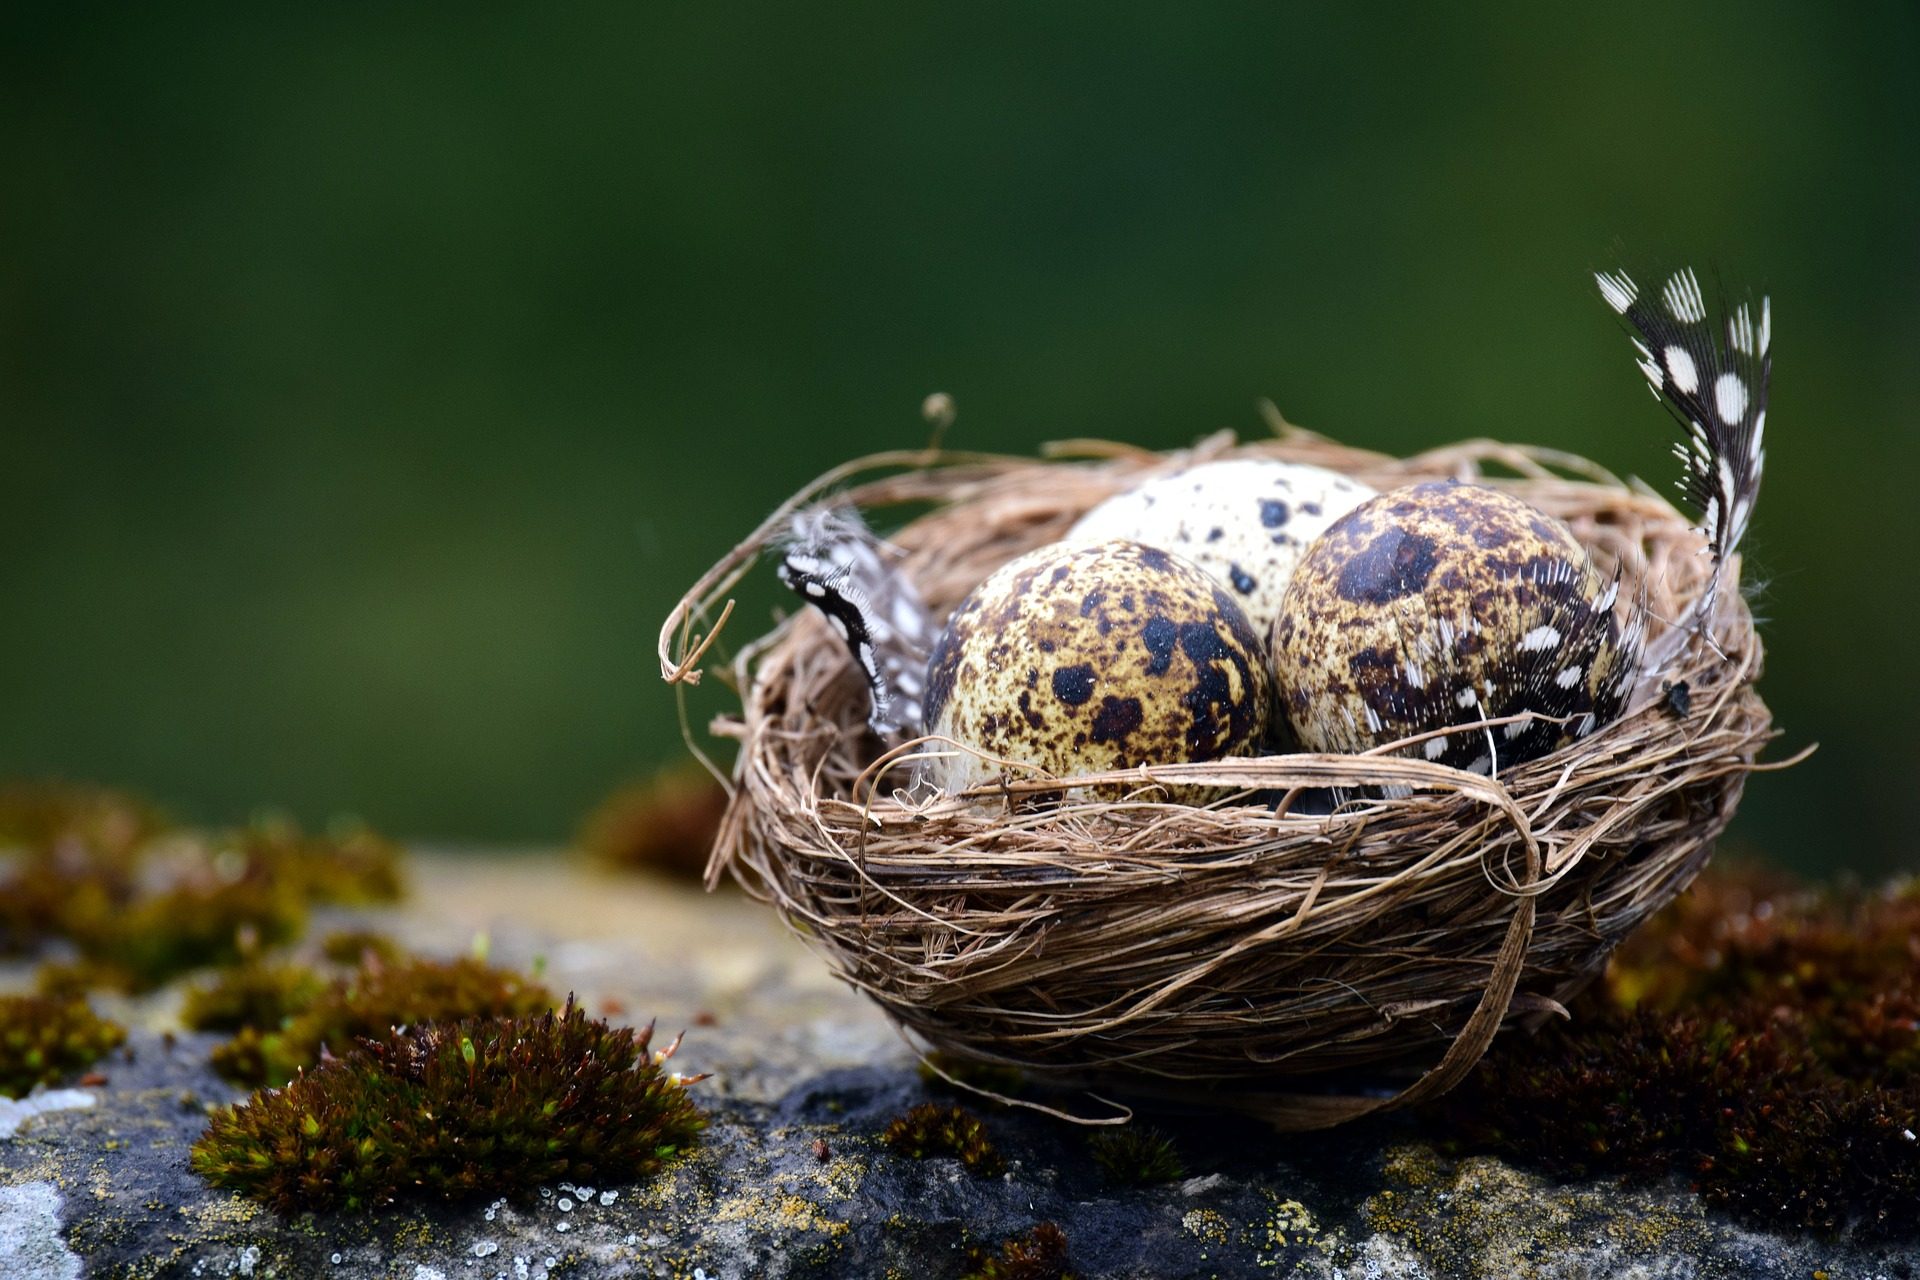 nest wallpaper,bird nest,nest,photography,still life photography,organism